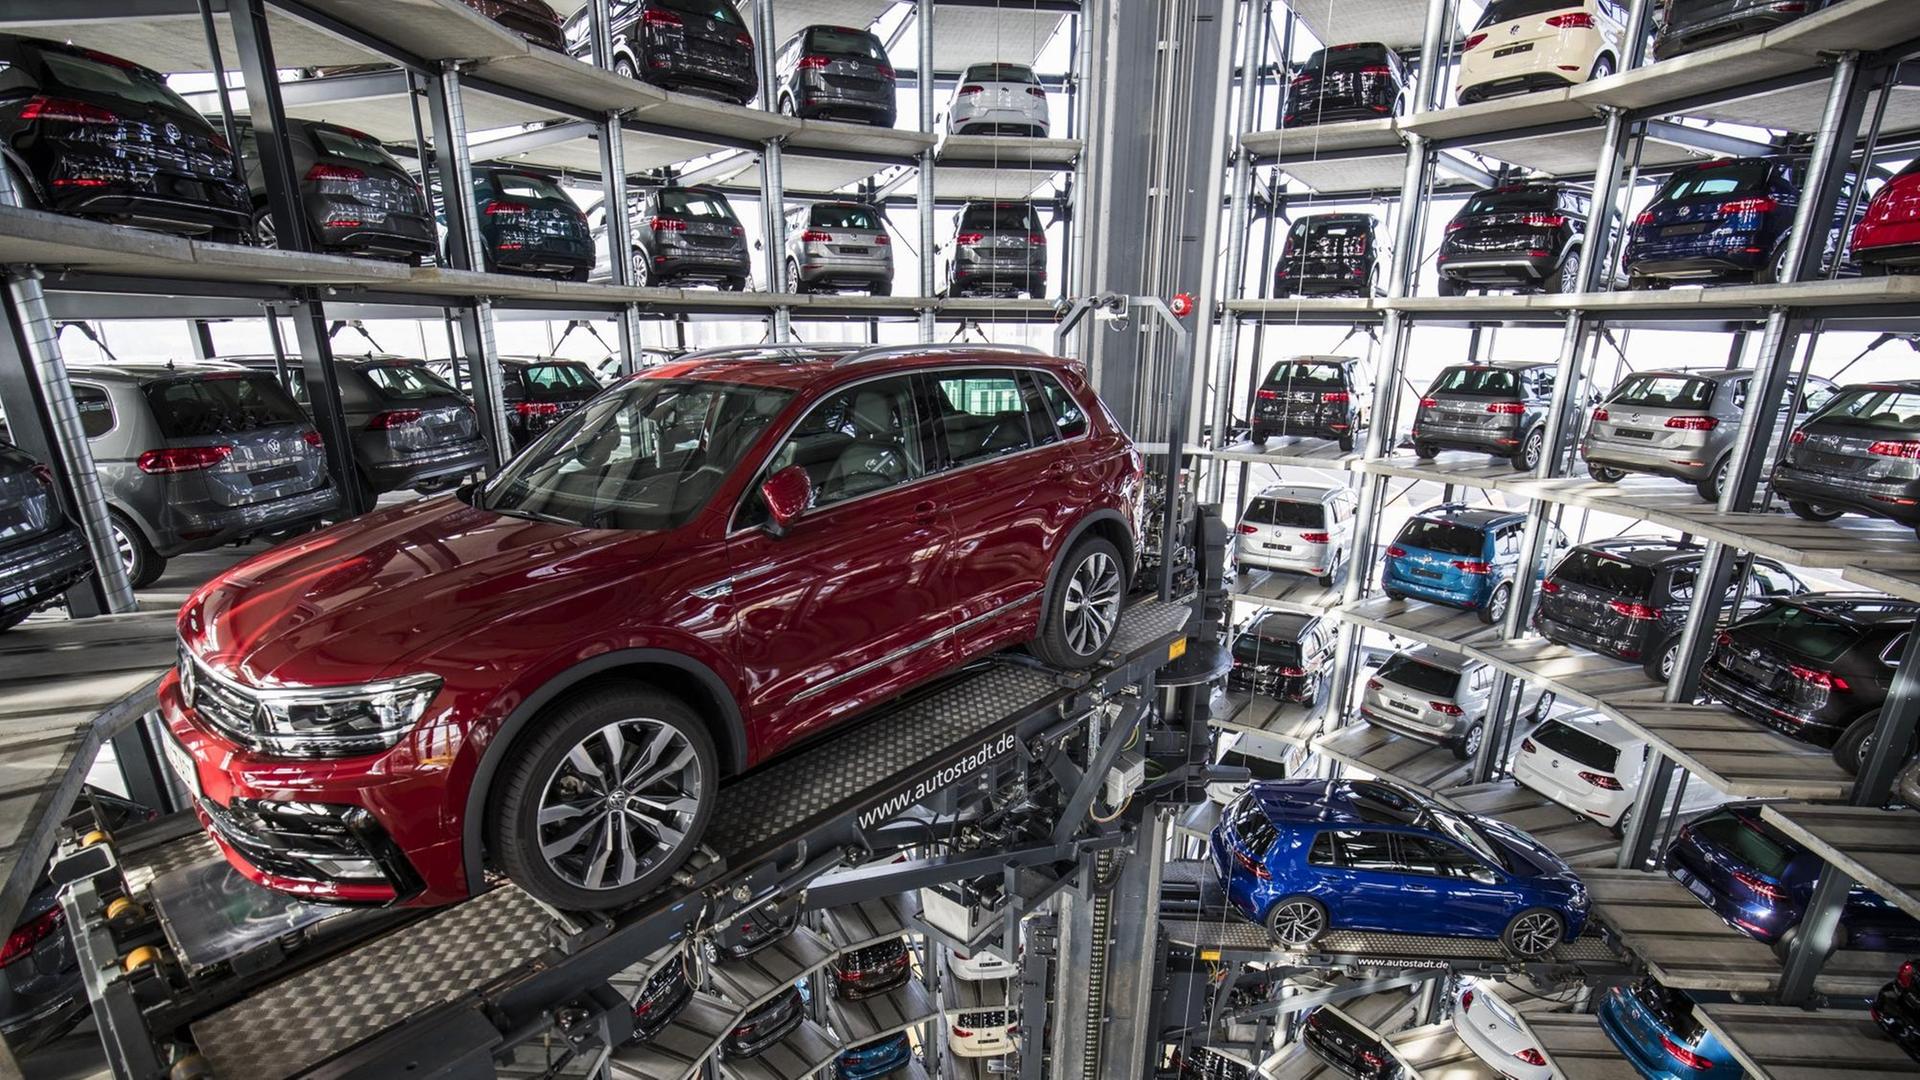 Autoturm im Hauptgeschäftssitz von Volkswagen in Wolfsburg